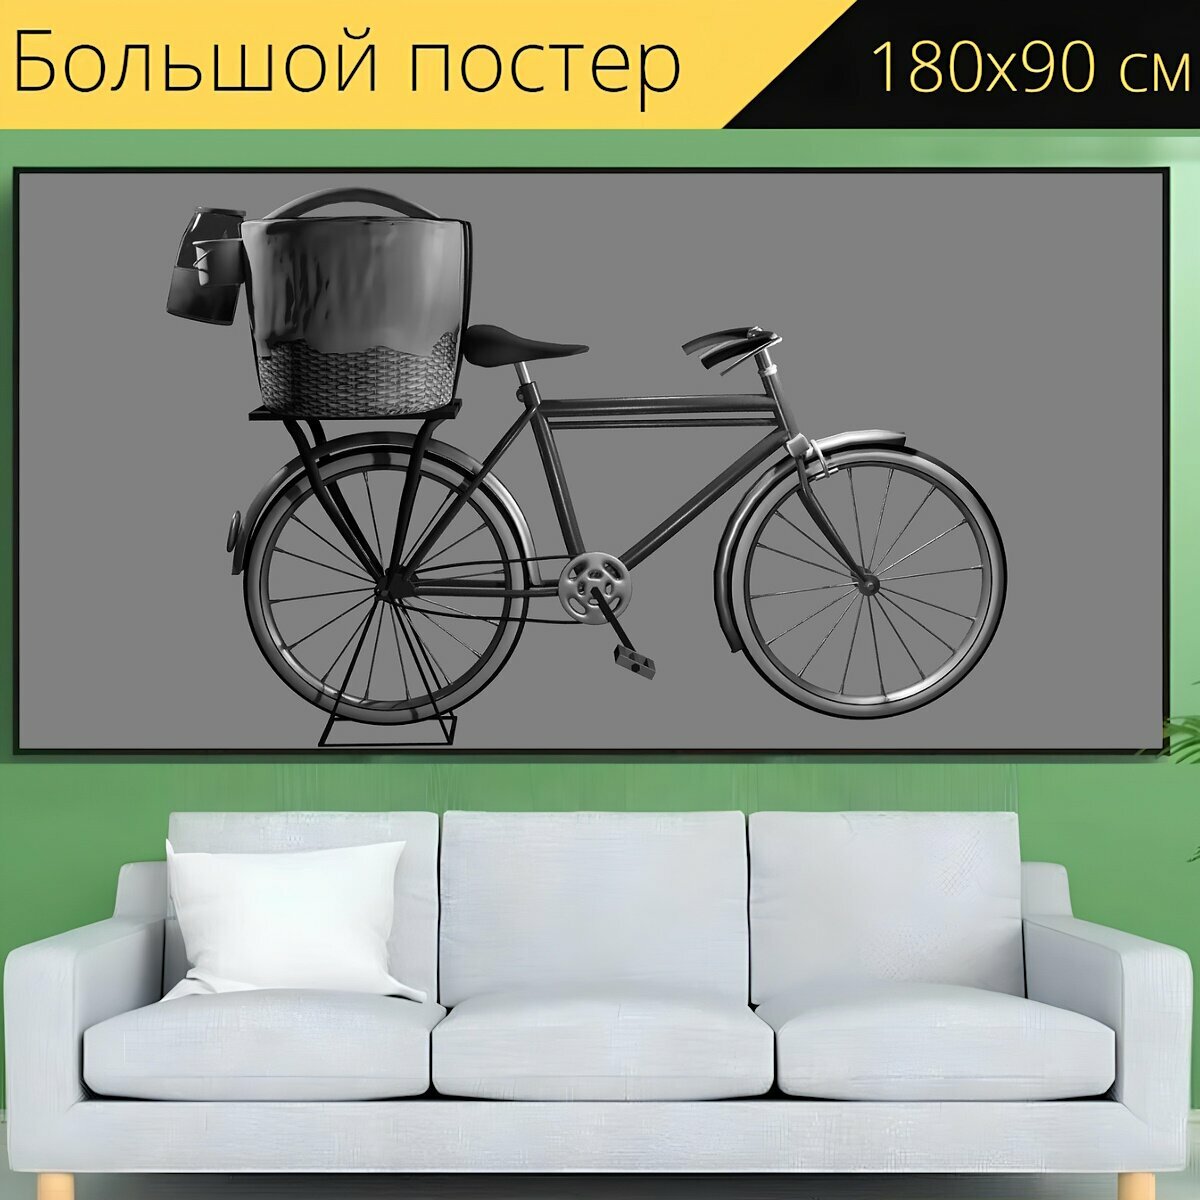 Большой постер "Велосипед, корзина, транспорт" 180 x 90 см. для интерьера